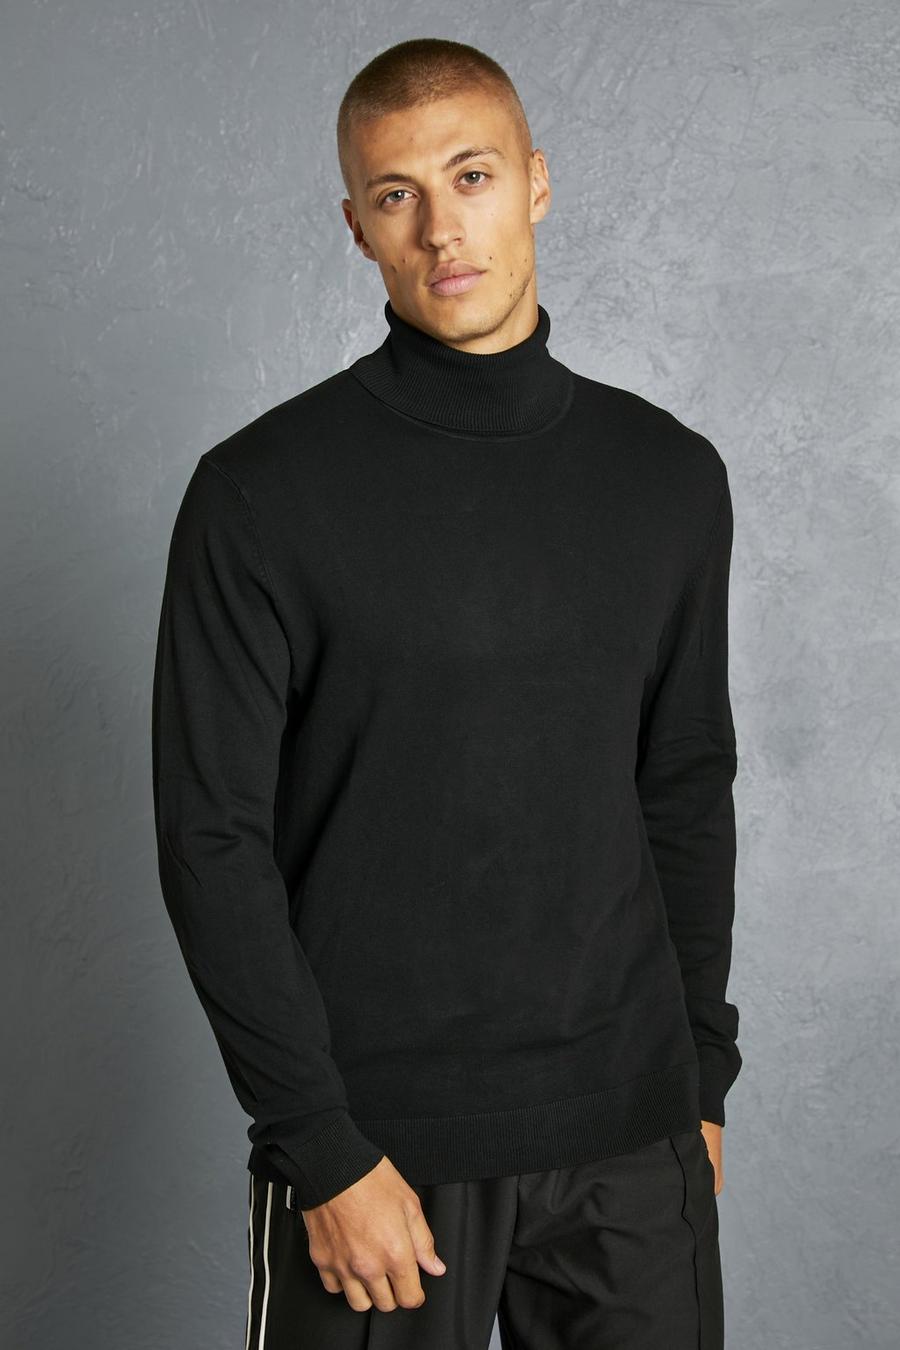 שחור nero סוודר בגזרה רגילה מחומרים ממוחזרים עם צווארון נגלל